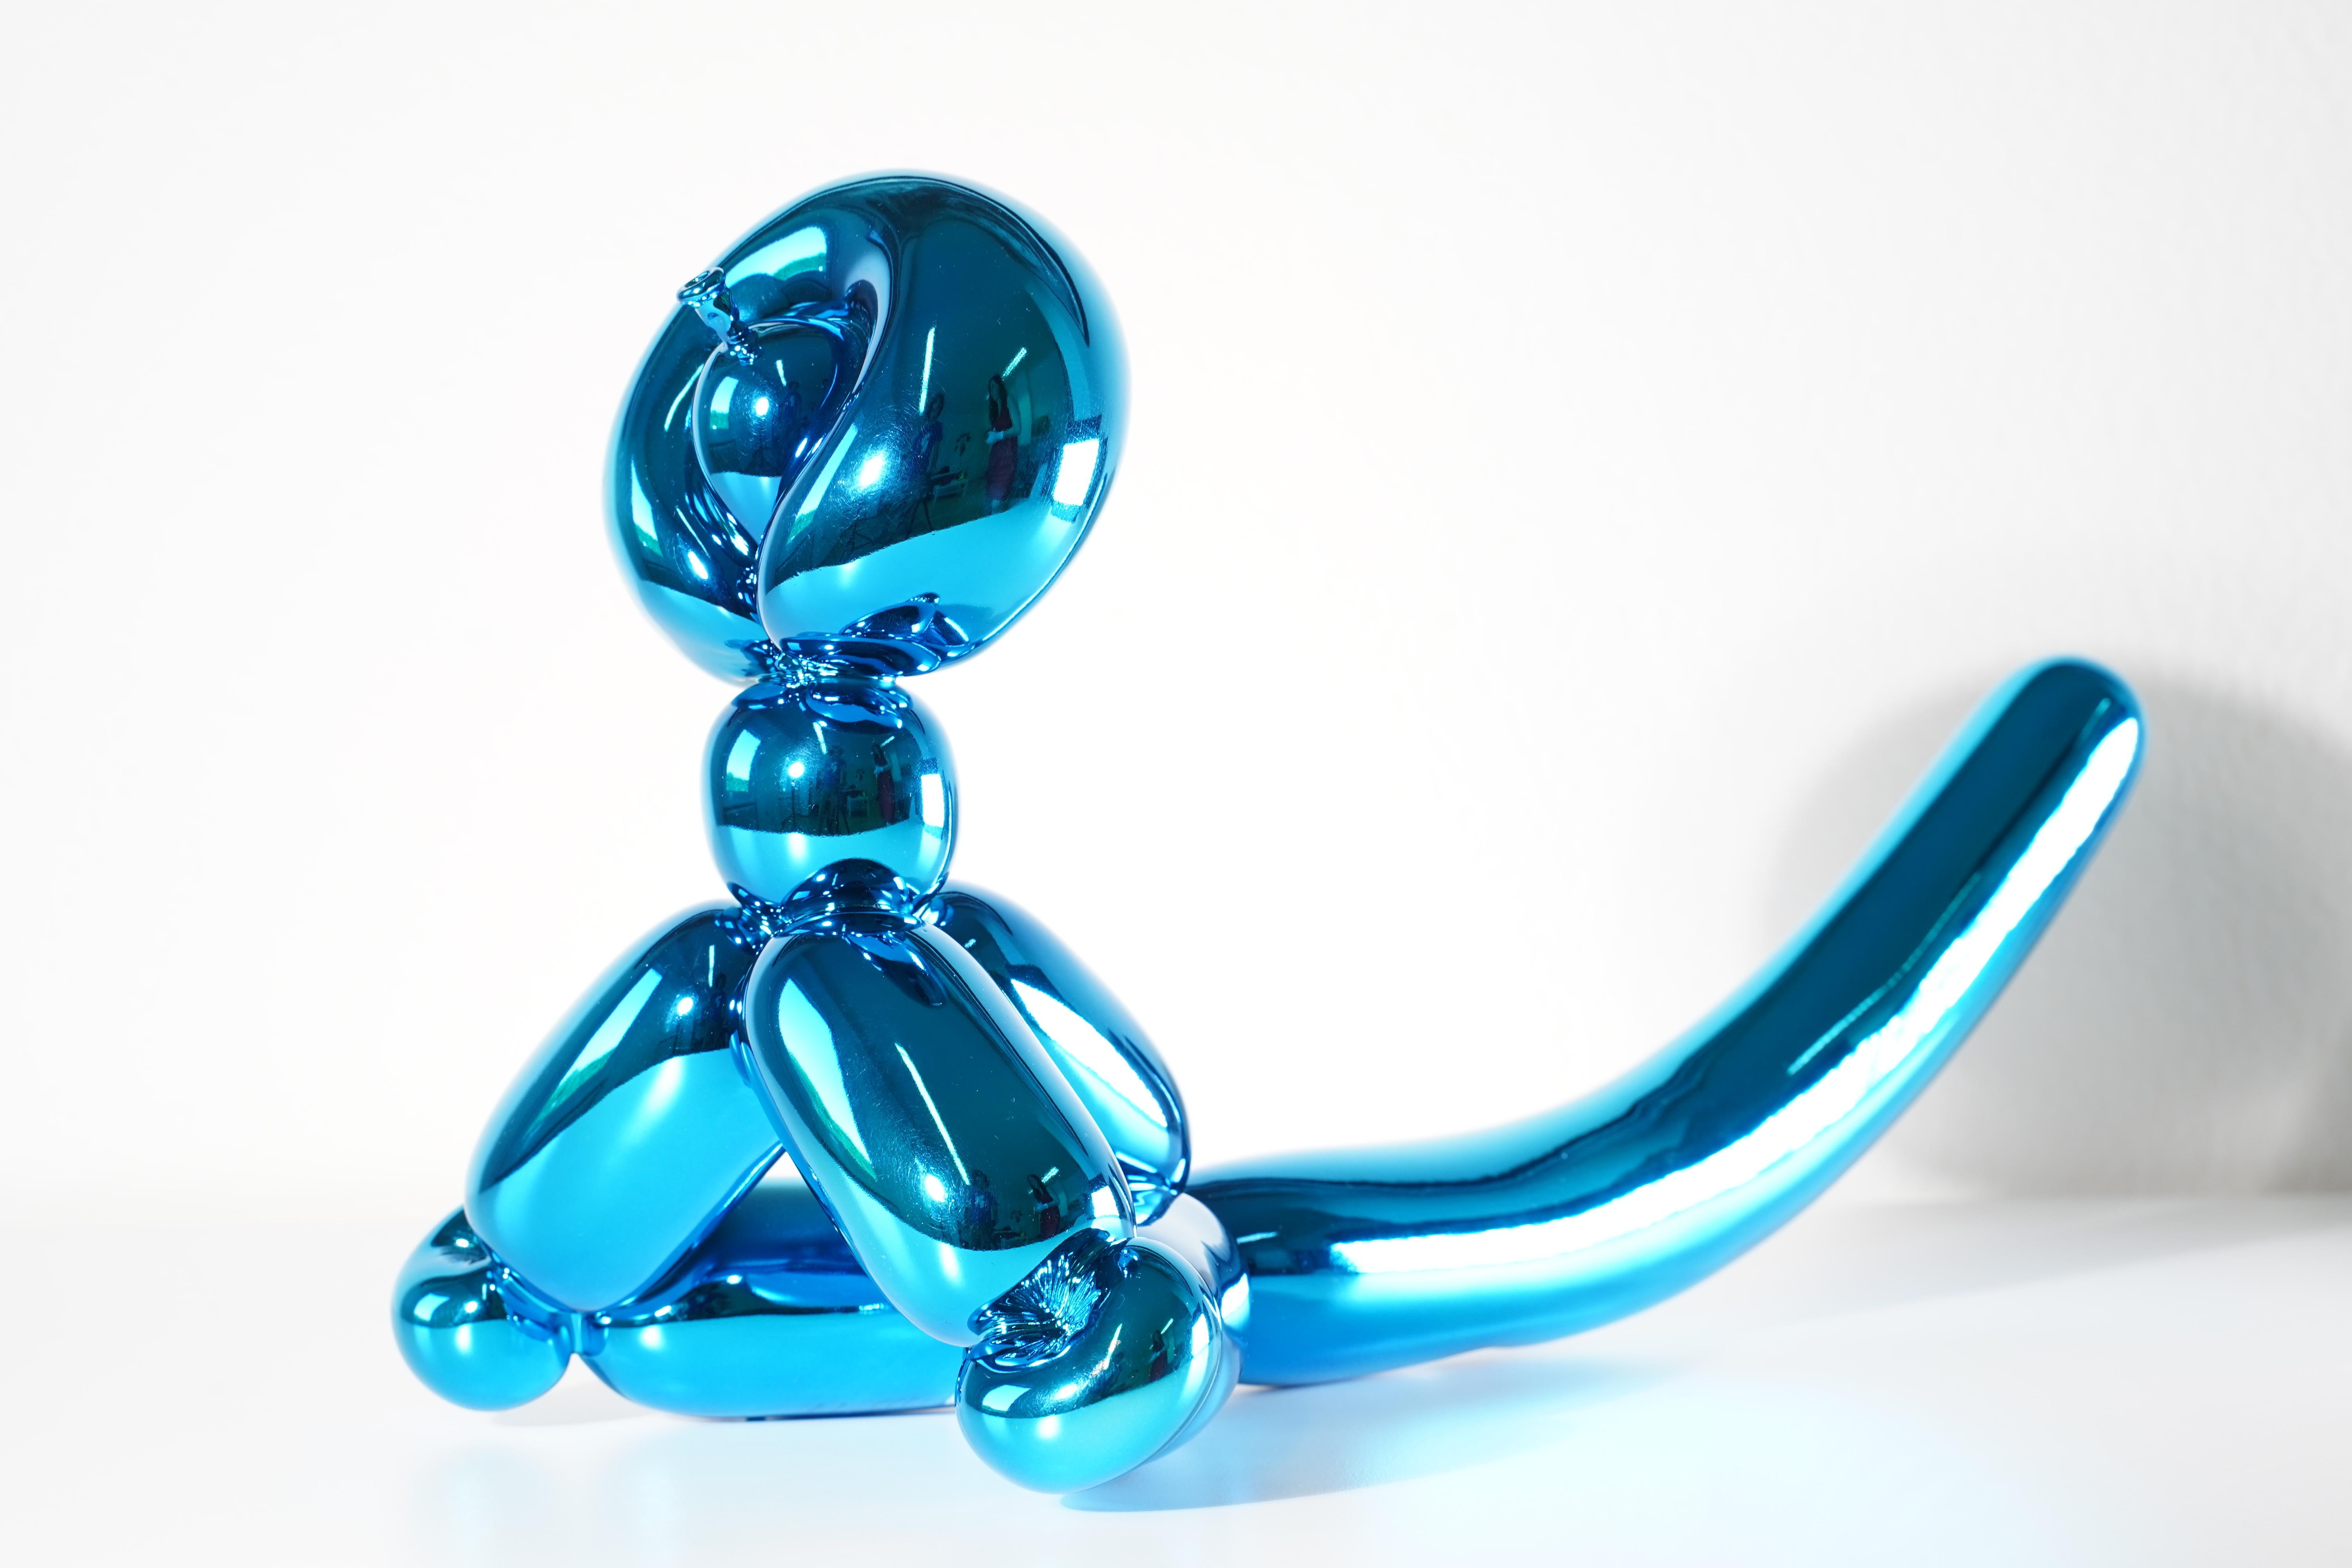 Balloon Monkey (Blue) - Jeff Koons, 21. Jahrhundert, Zeitgenössisch, Porzellan, Skulptur, Dekor, Limitierte Auflage

Limoges-Porzellan mit chromatischer, metallisierter Beschichtung
Auflage von 999
Signiert und nummeriert
In neuwertigem Zustand, wie